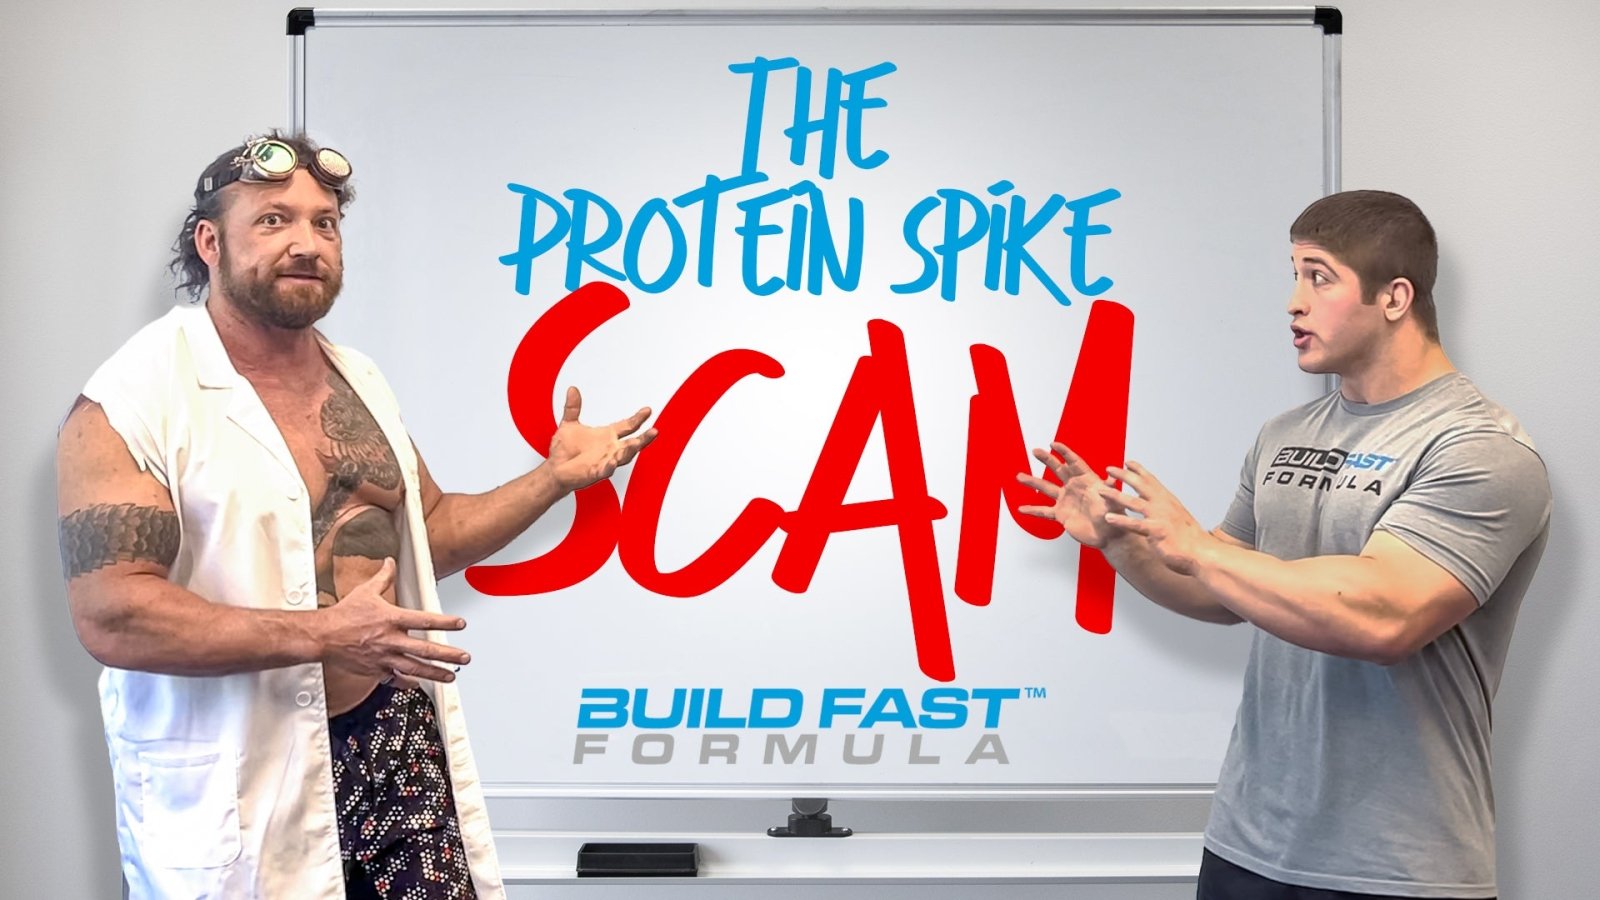 The Protein Spike Scam - BuildFastFormula